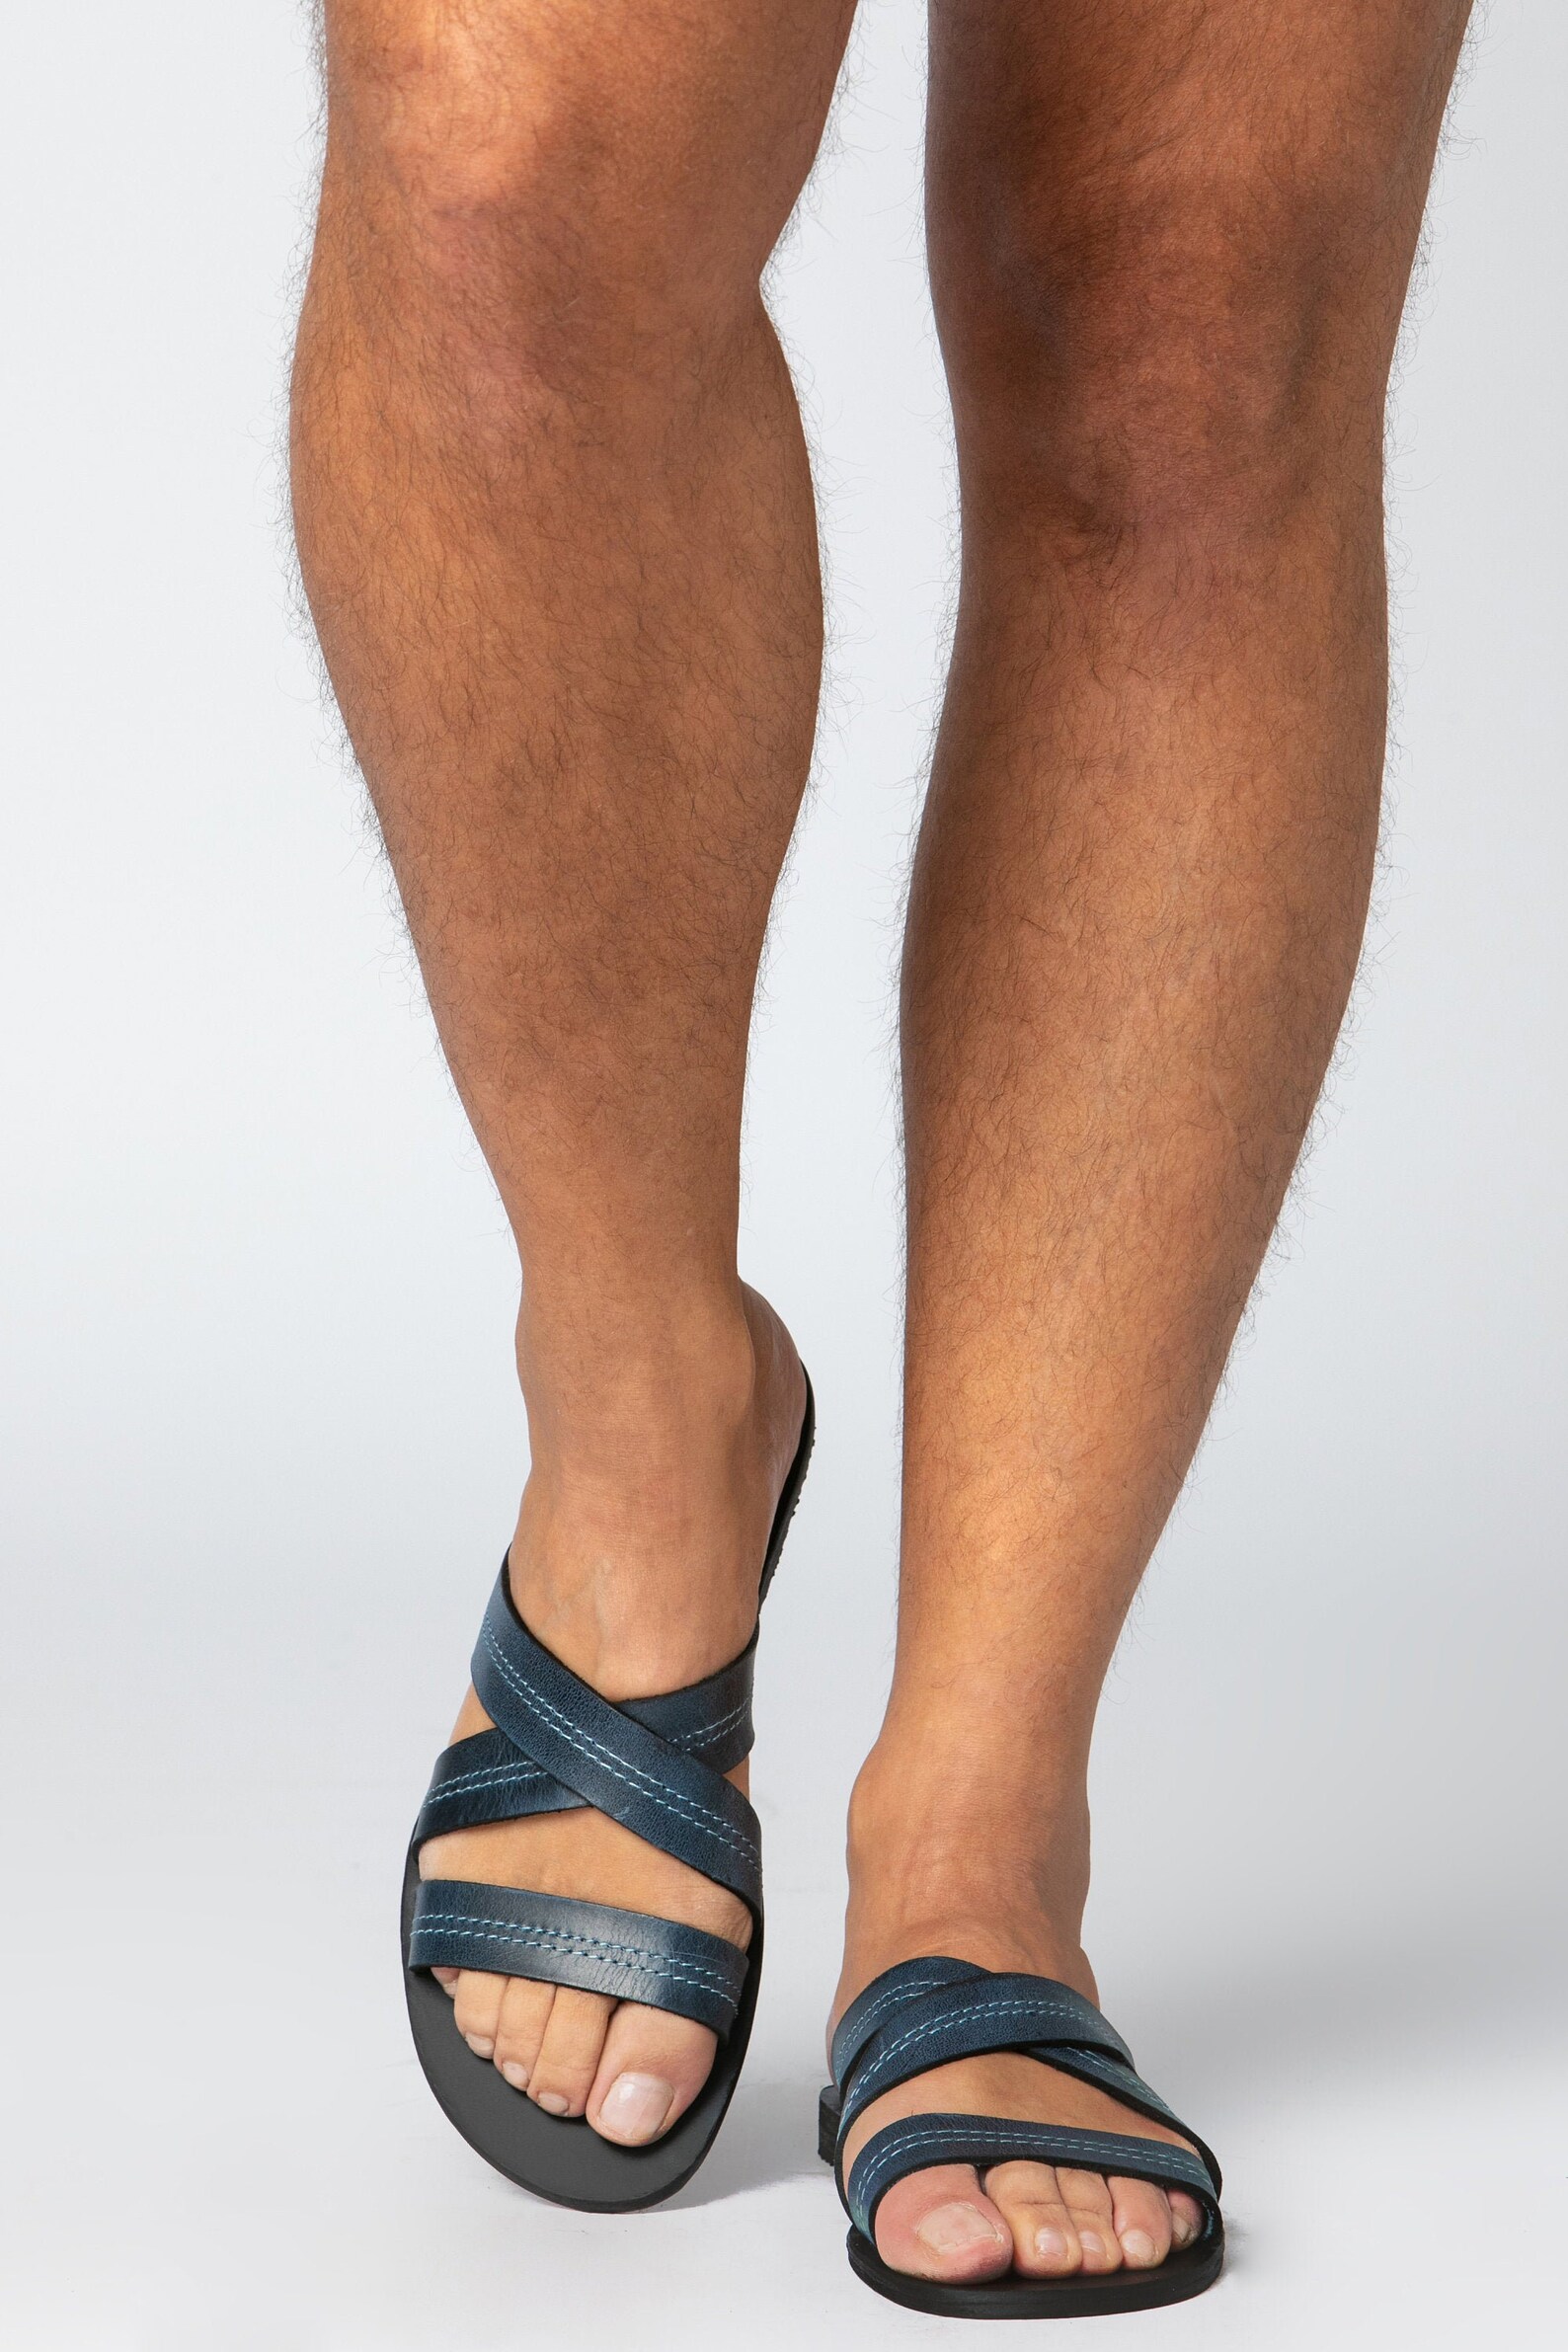 Leather sandals for men Summer sandals Blue & Black sandals | Etsy